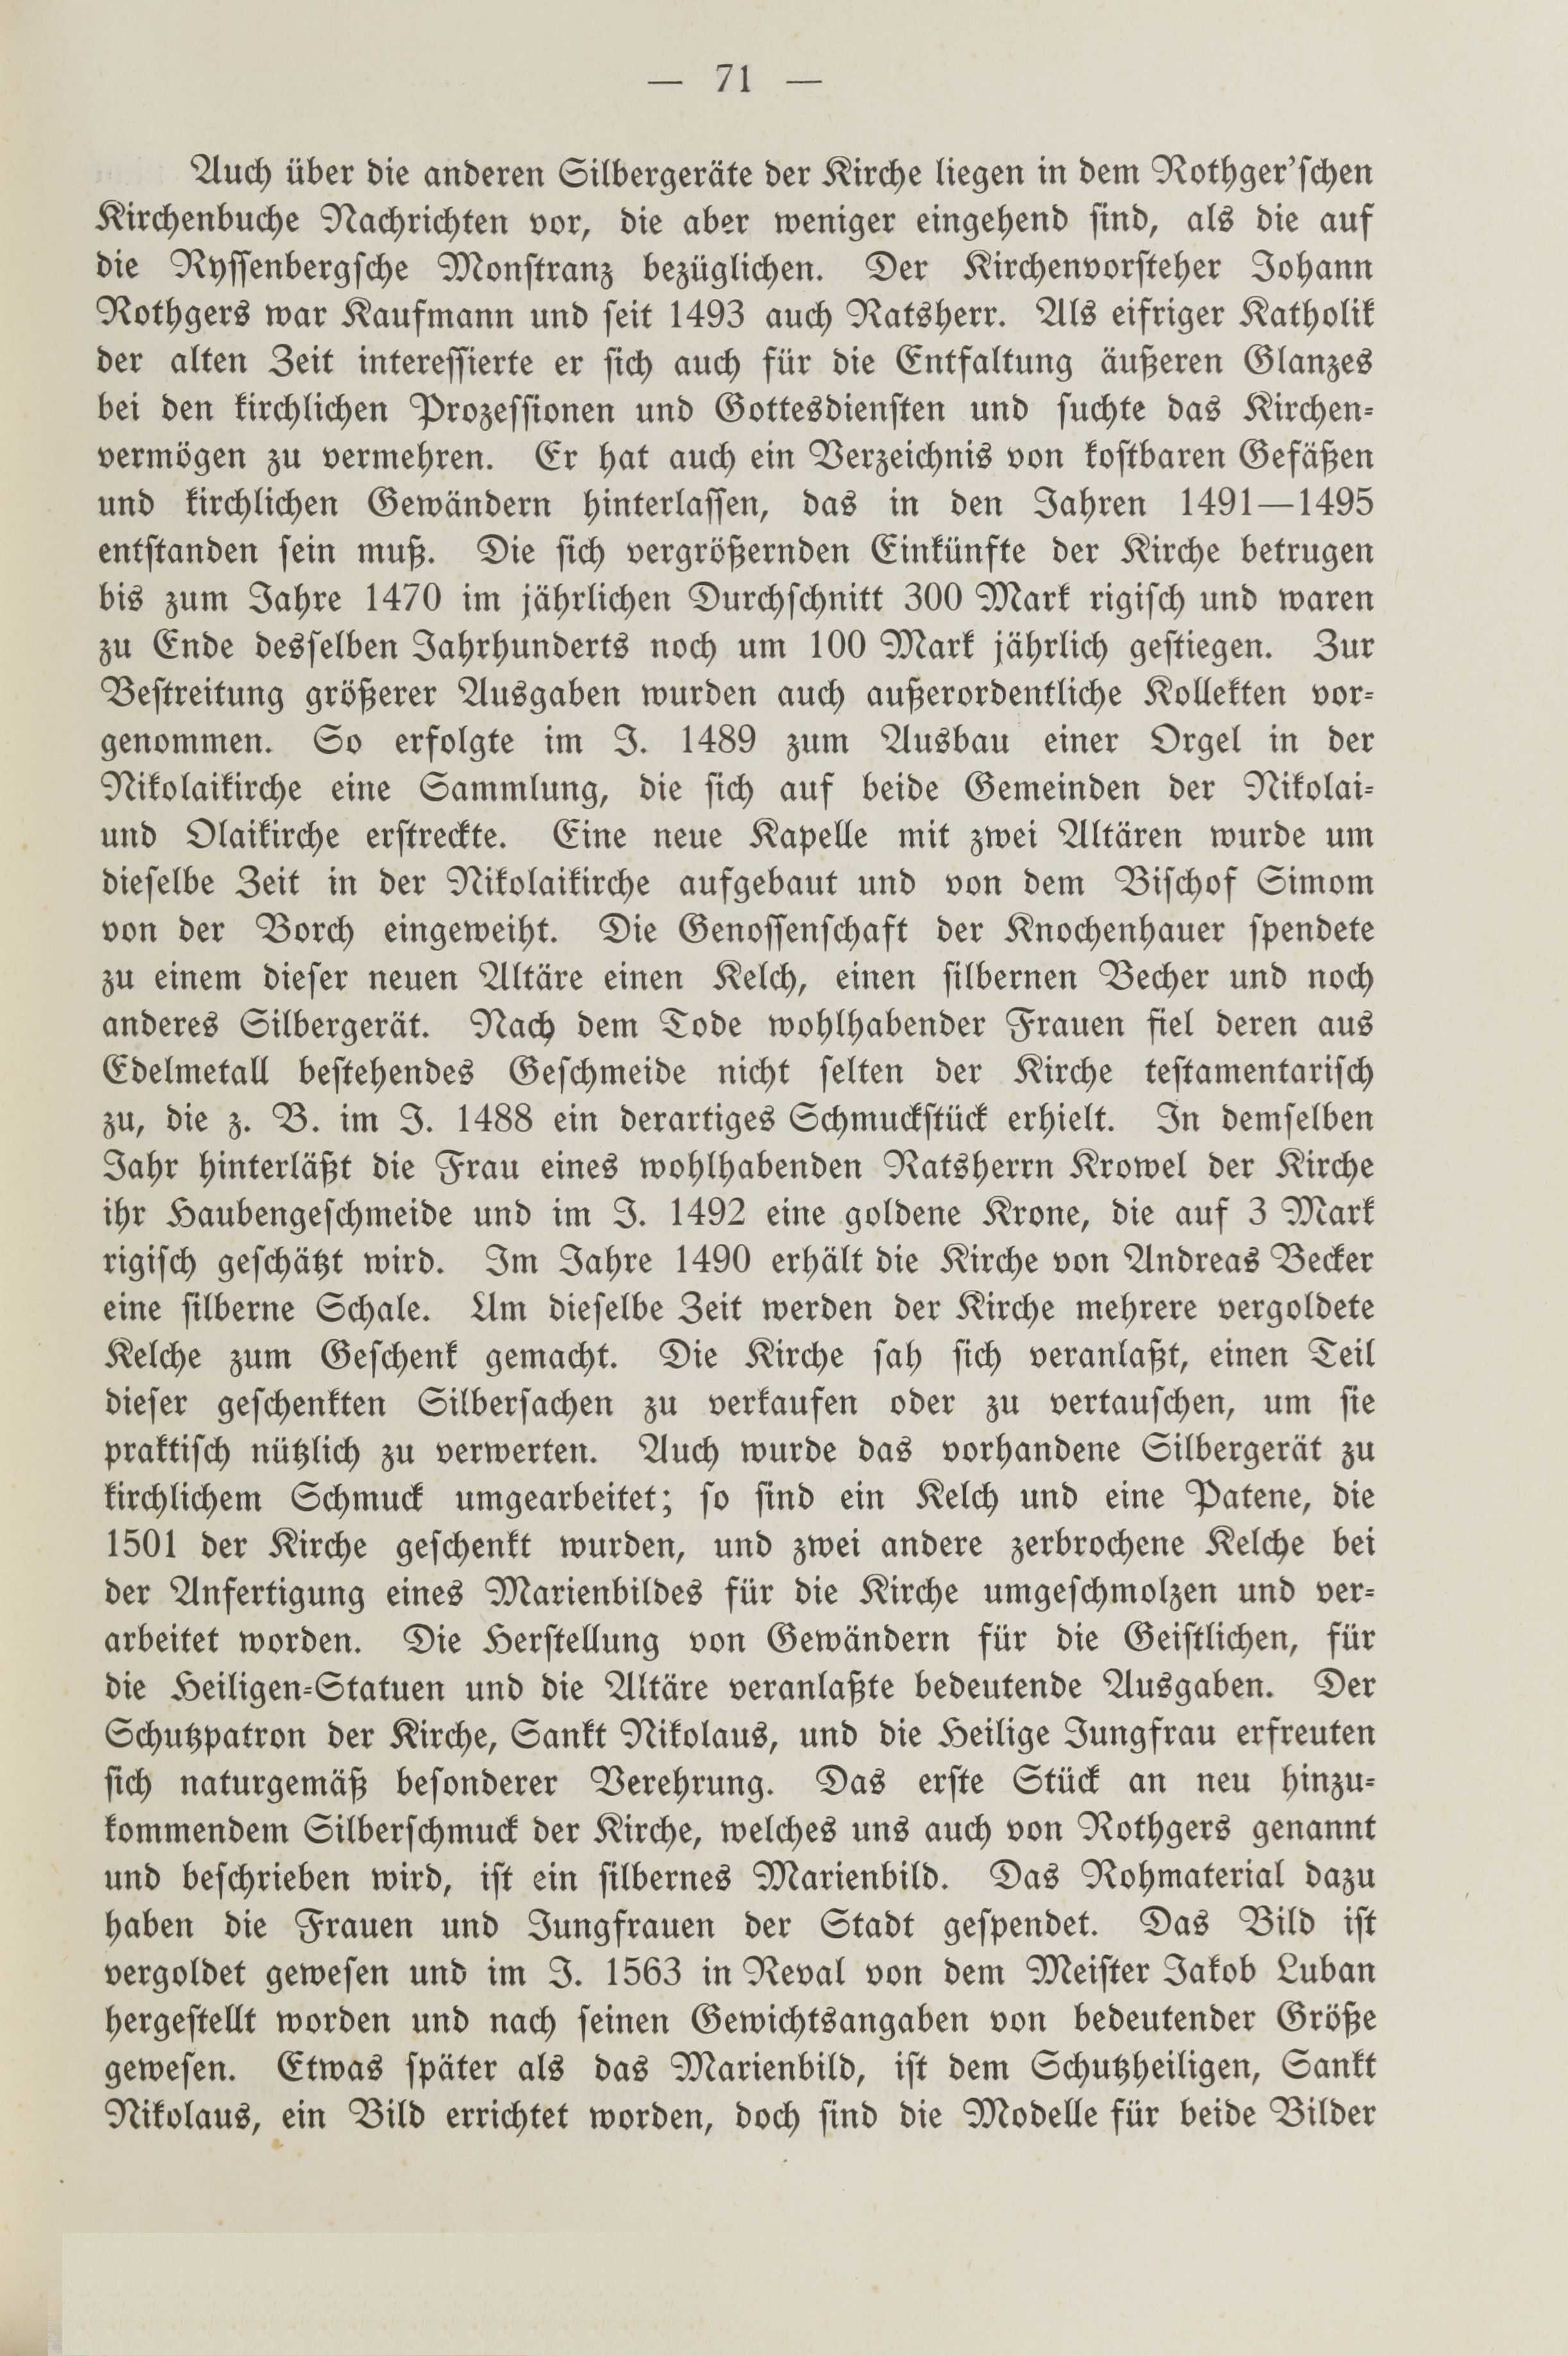 Deutsche Monatsschrift für Russland [2] (1913) | 75. (71) Põhitekst